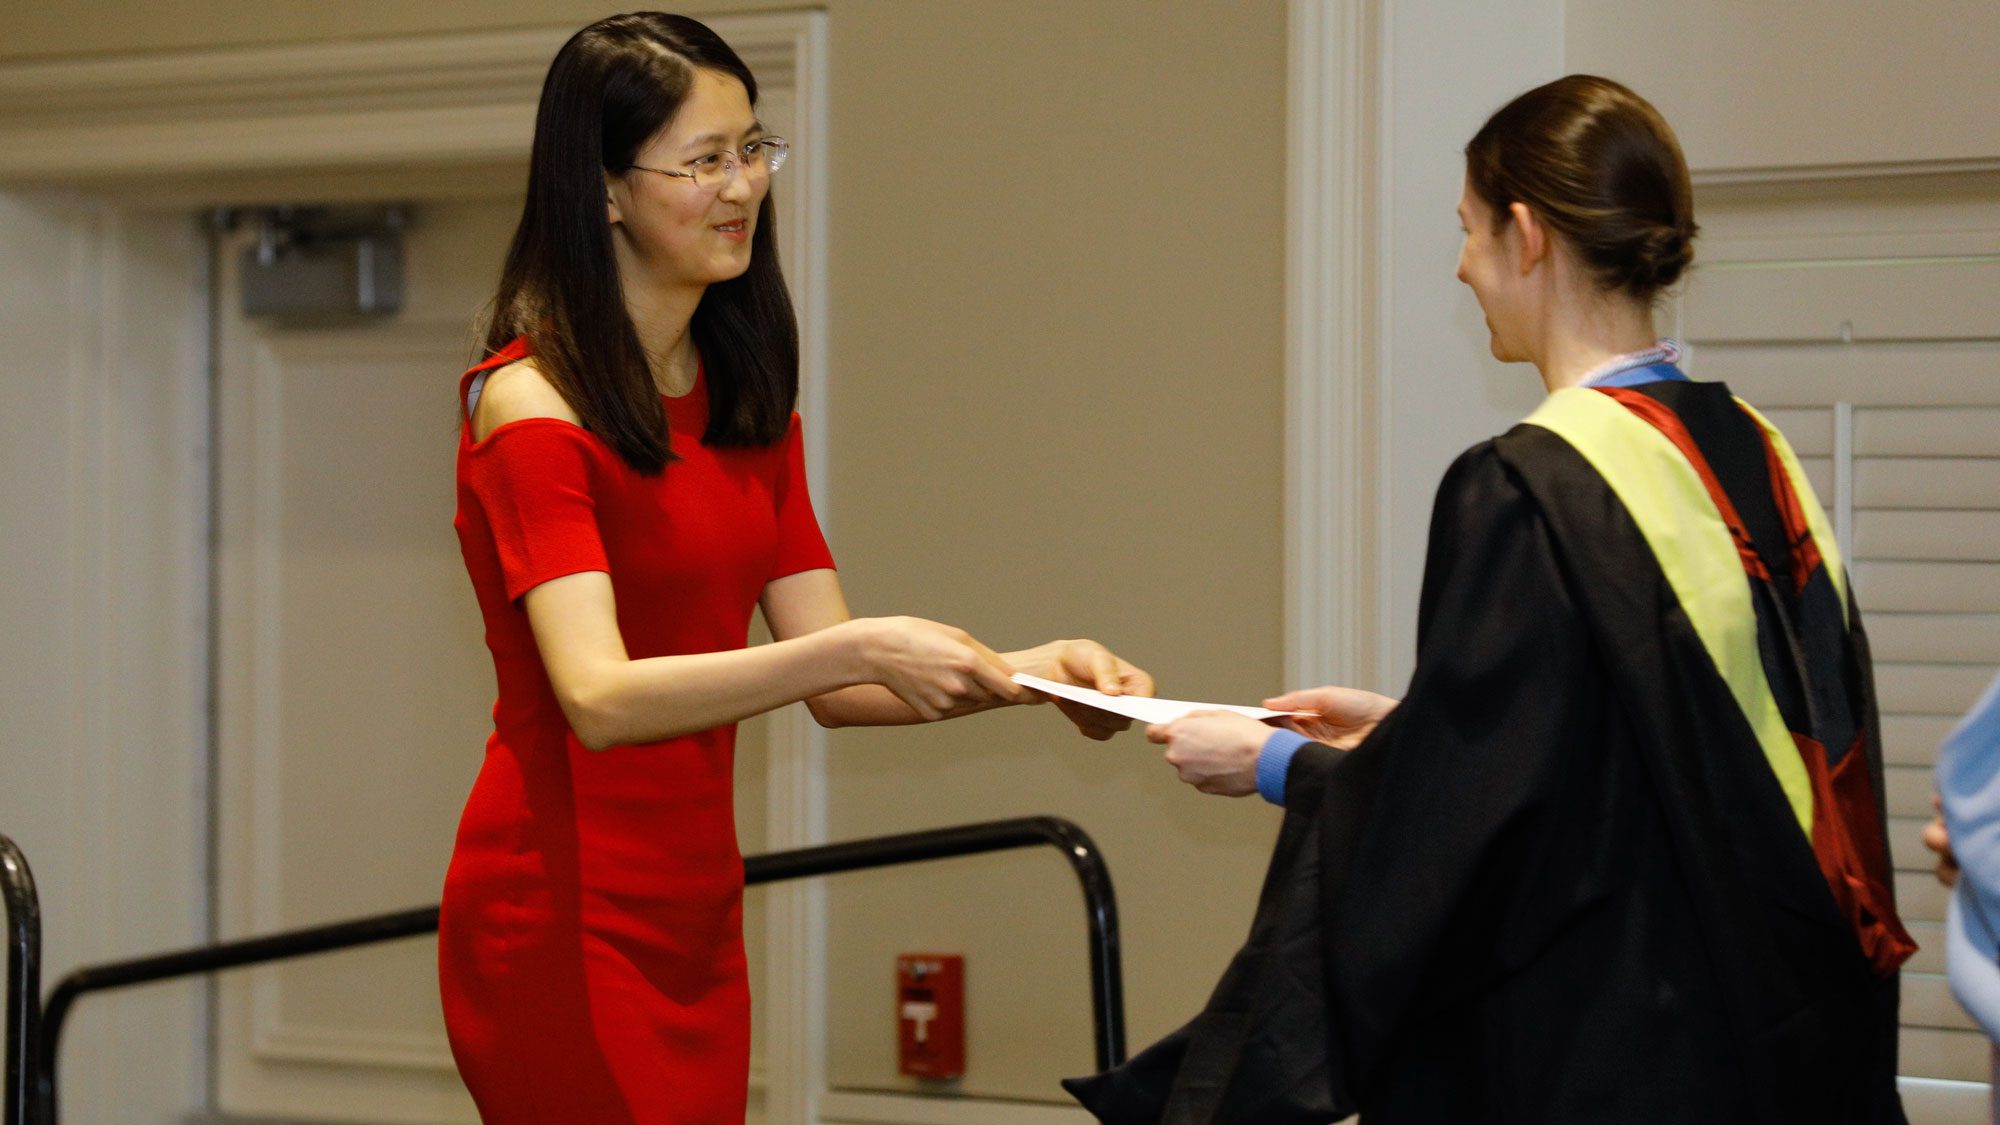 Student receiving phi beta kappa honors